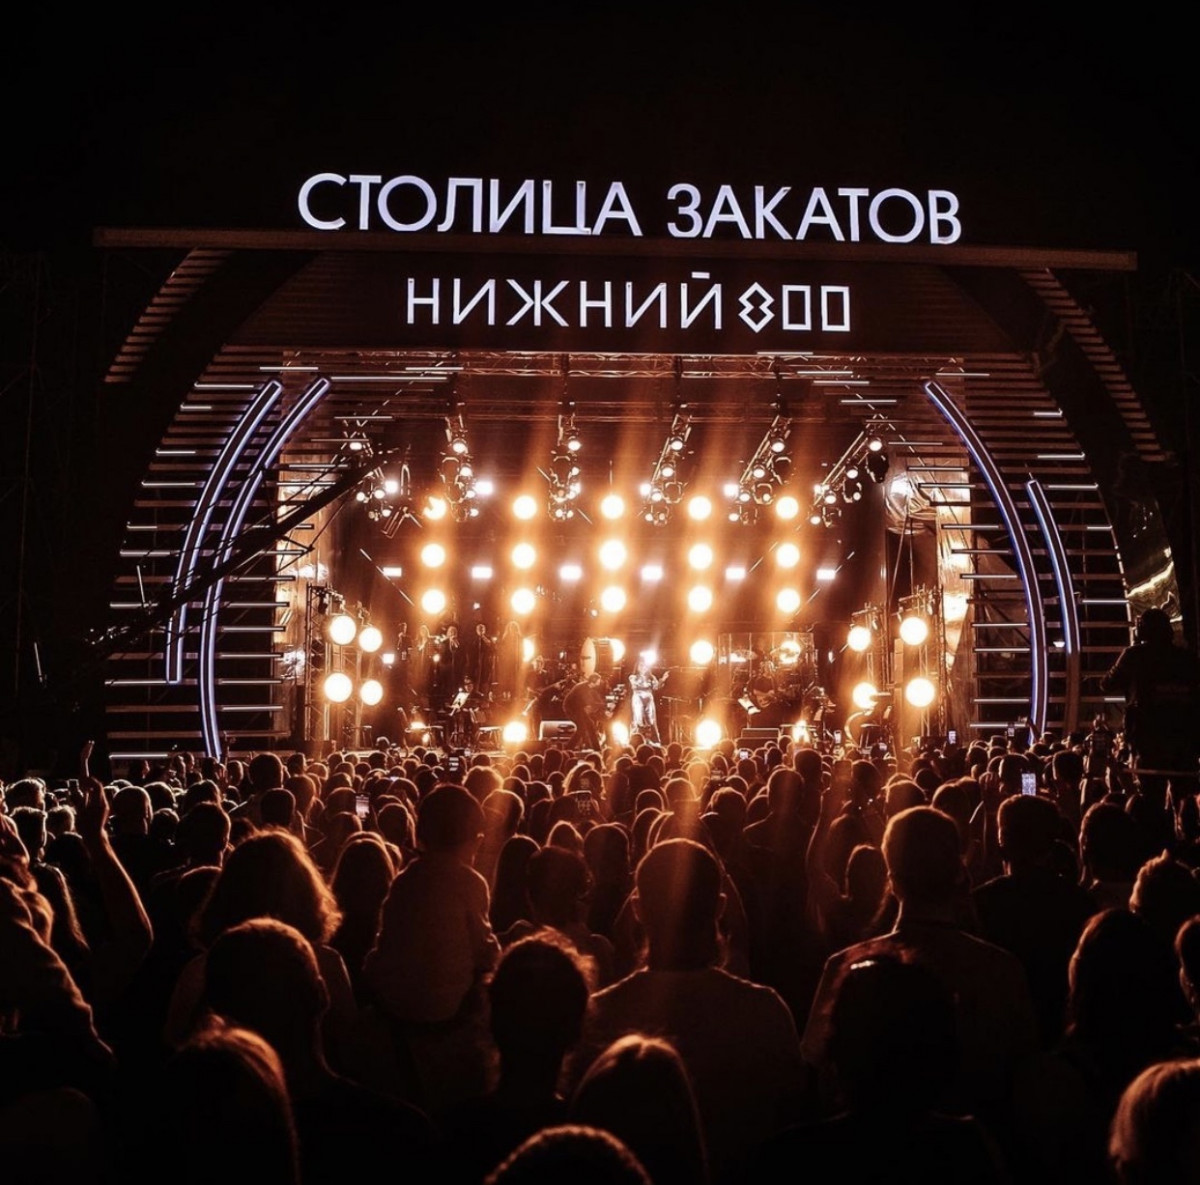 Нижегородский фестиваль «Столица закатов» решено продлить до 25 сентября